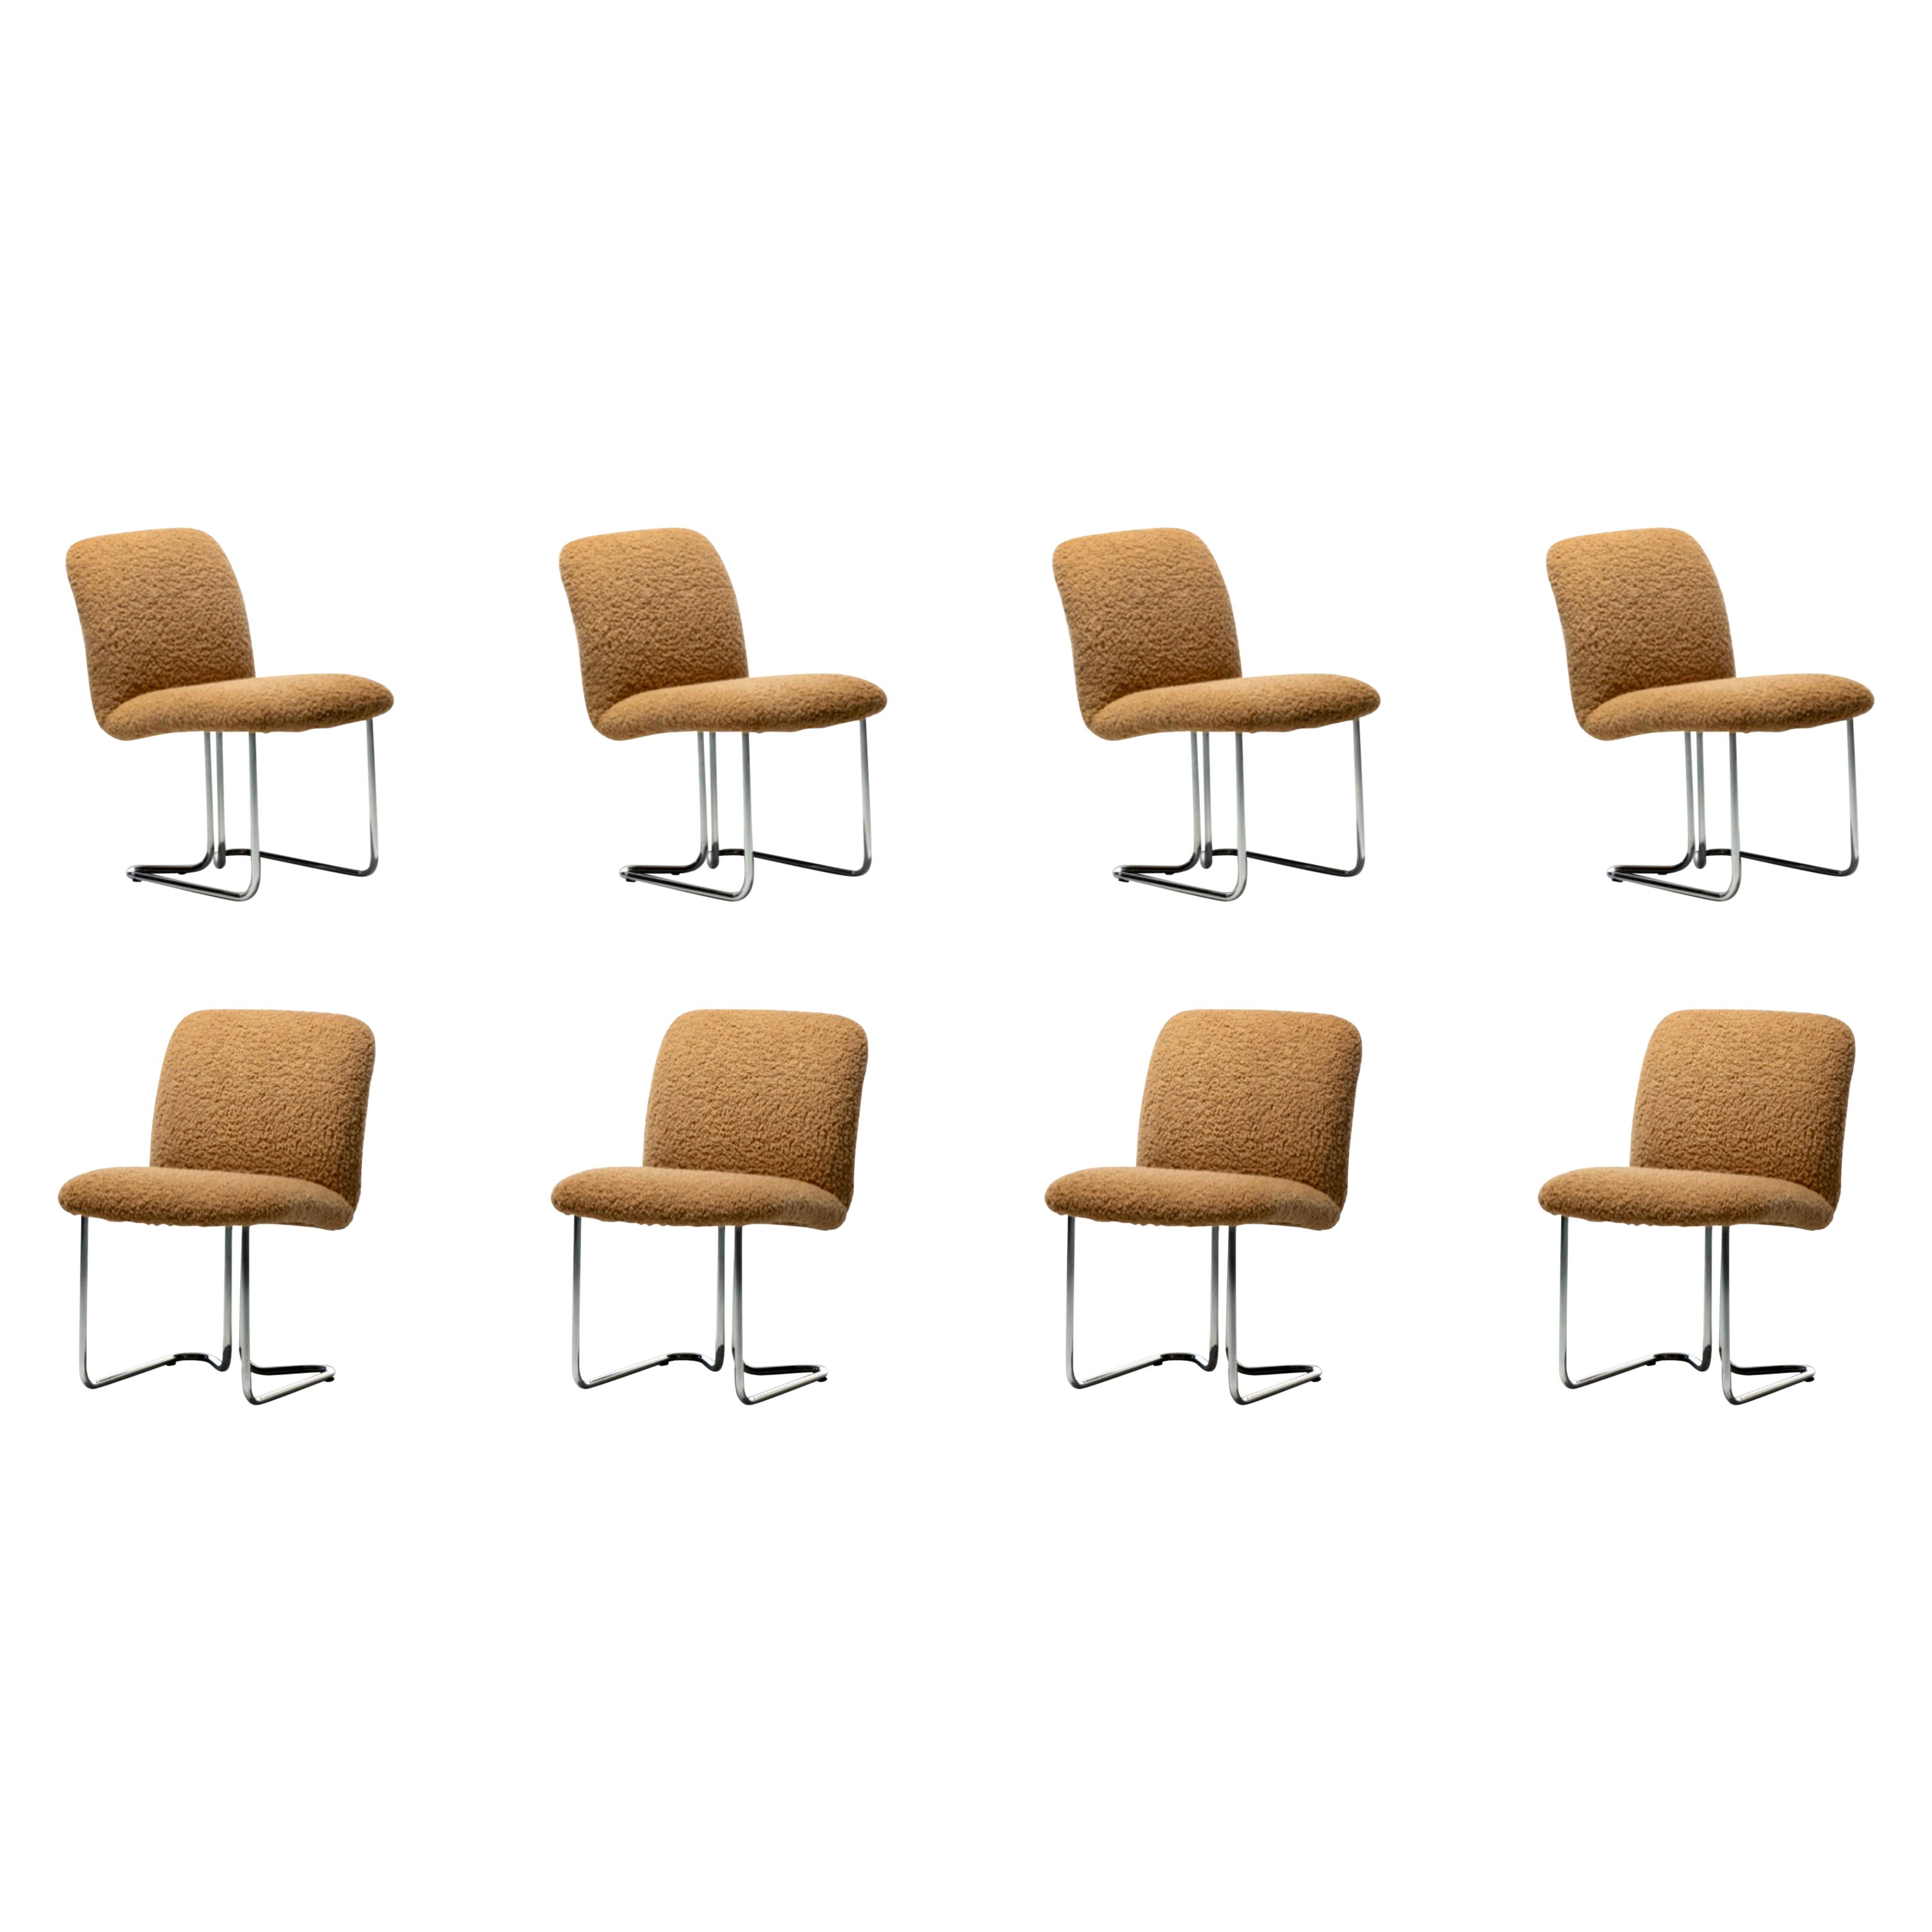 Design Institute America Dining Room Chairs